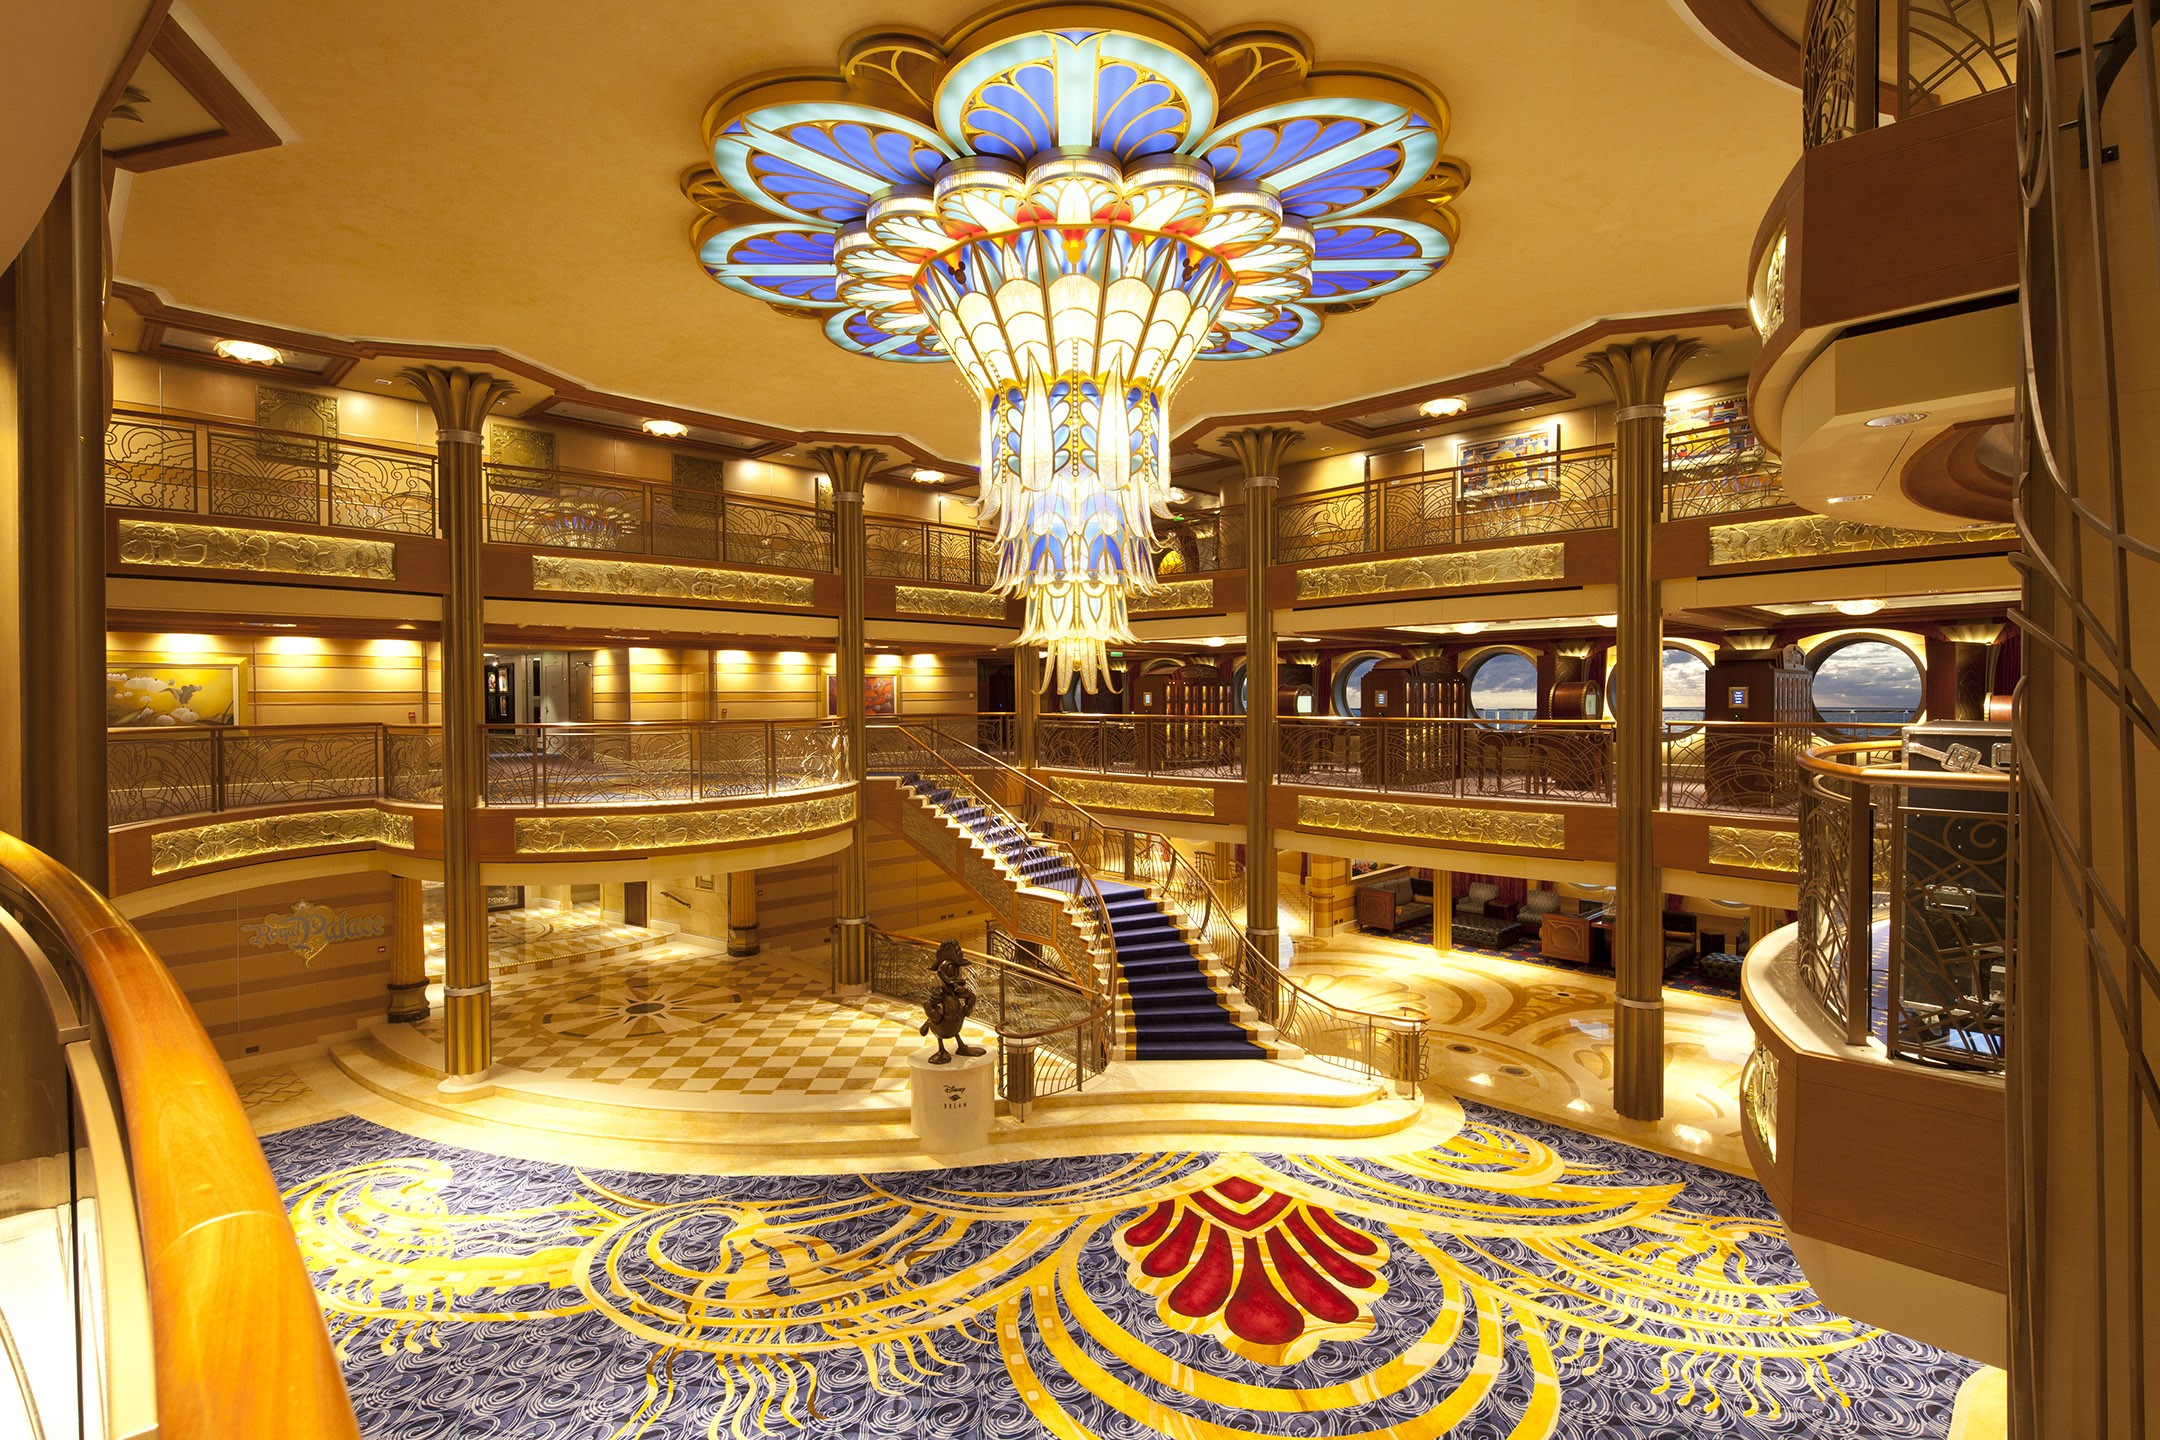 O Atrium do Disney Dream tem escadas parecidas com a do castelo da Bela e a Fera (Foto: Divulgação)